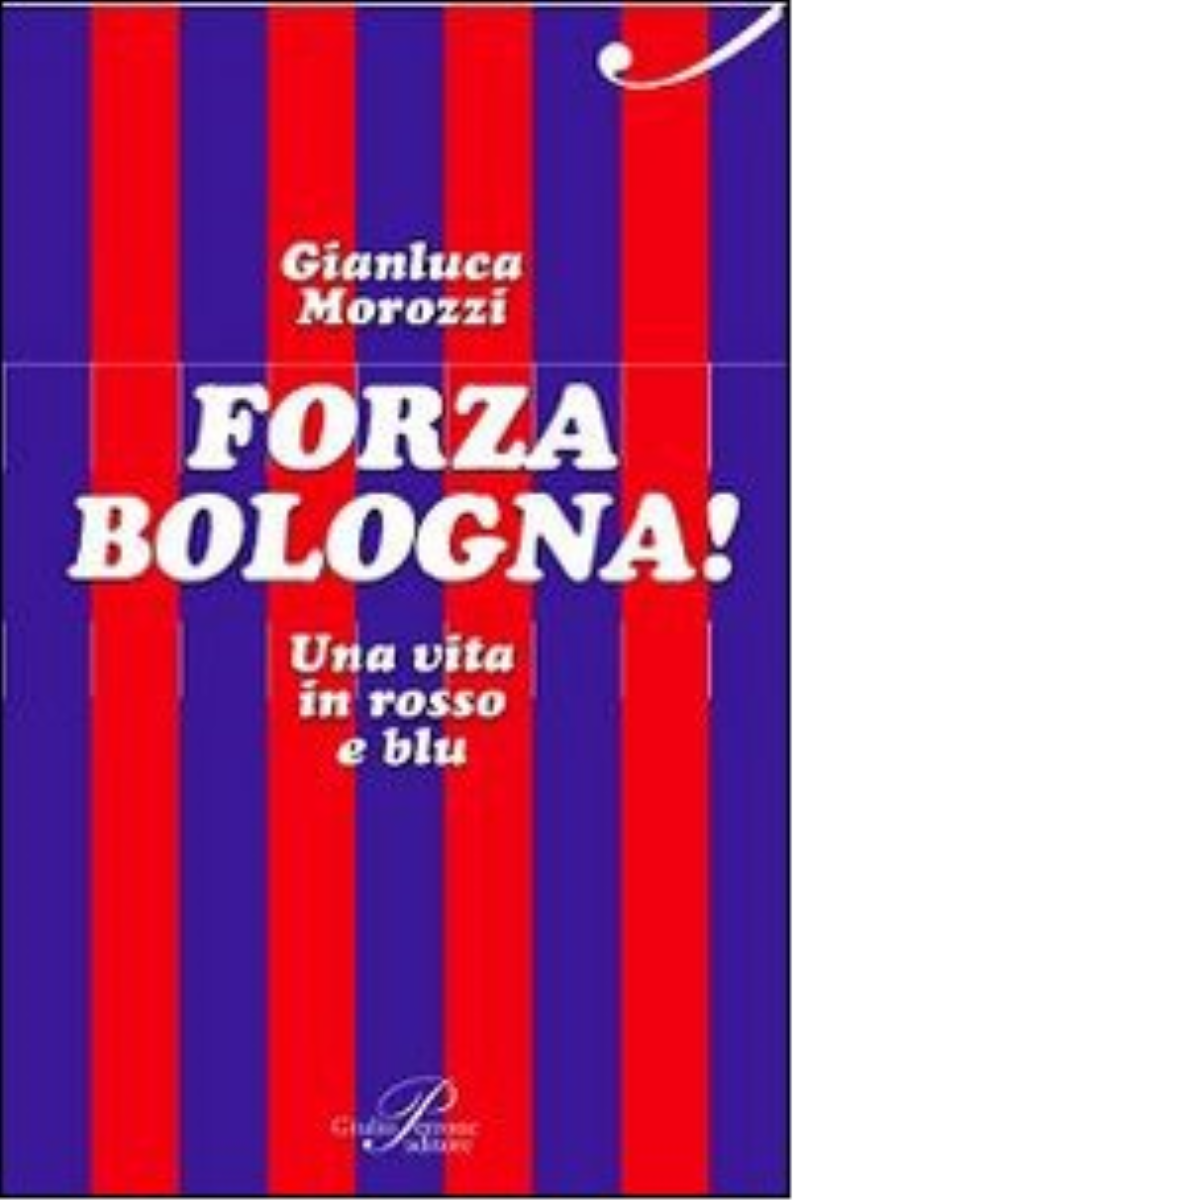 Forza Bologna! Una vita in rosso e blu - Gianluca Morozzi - Perrone, 2014